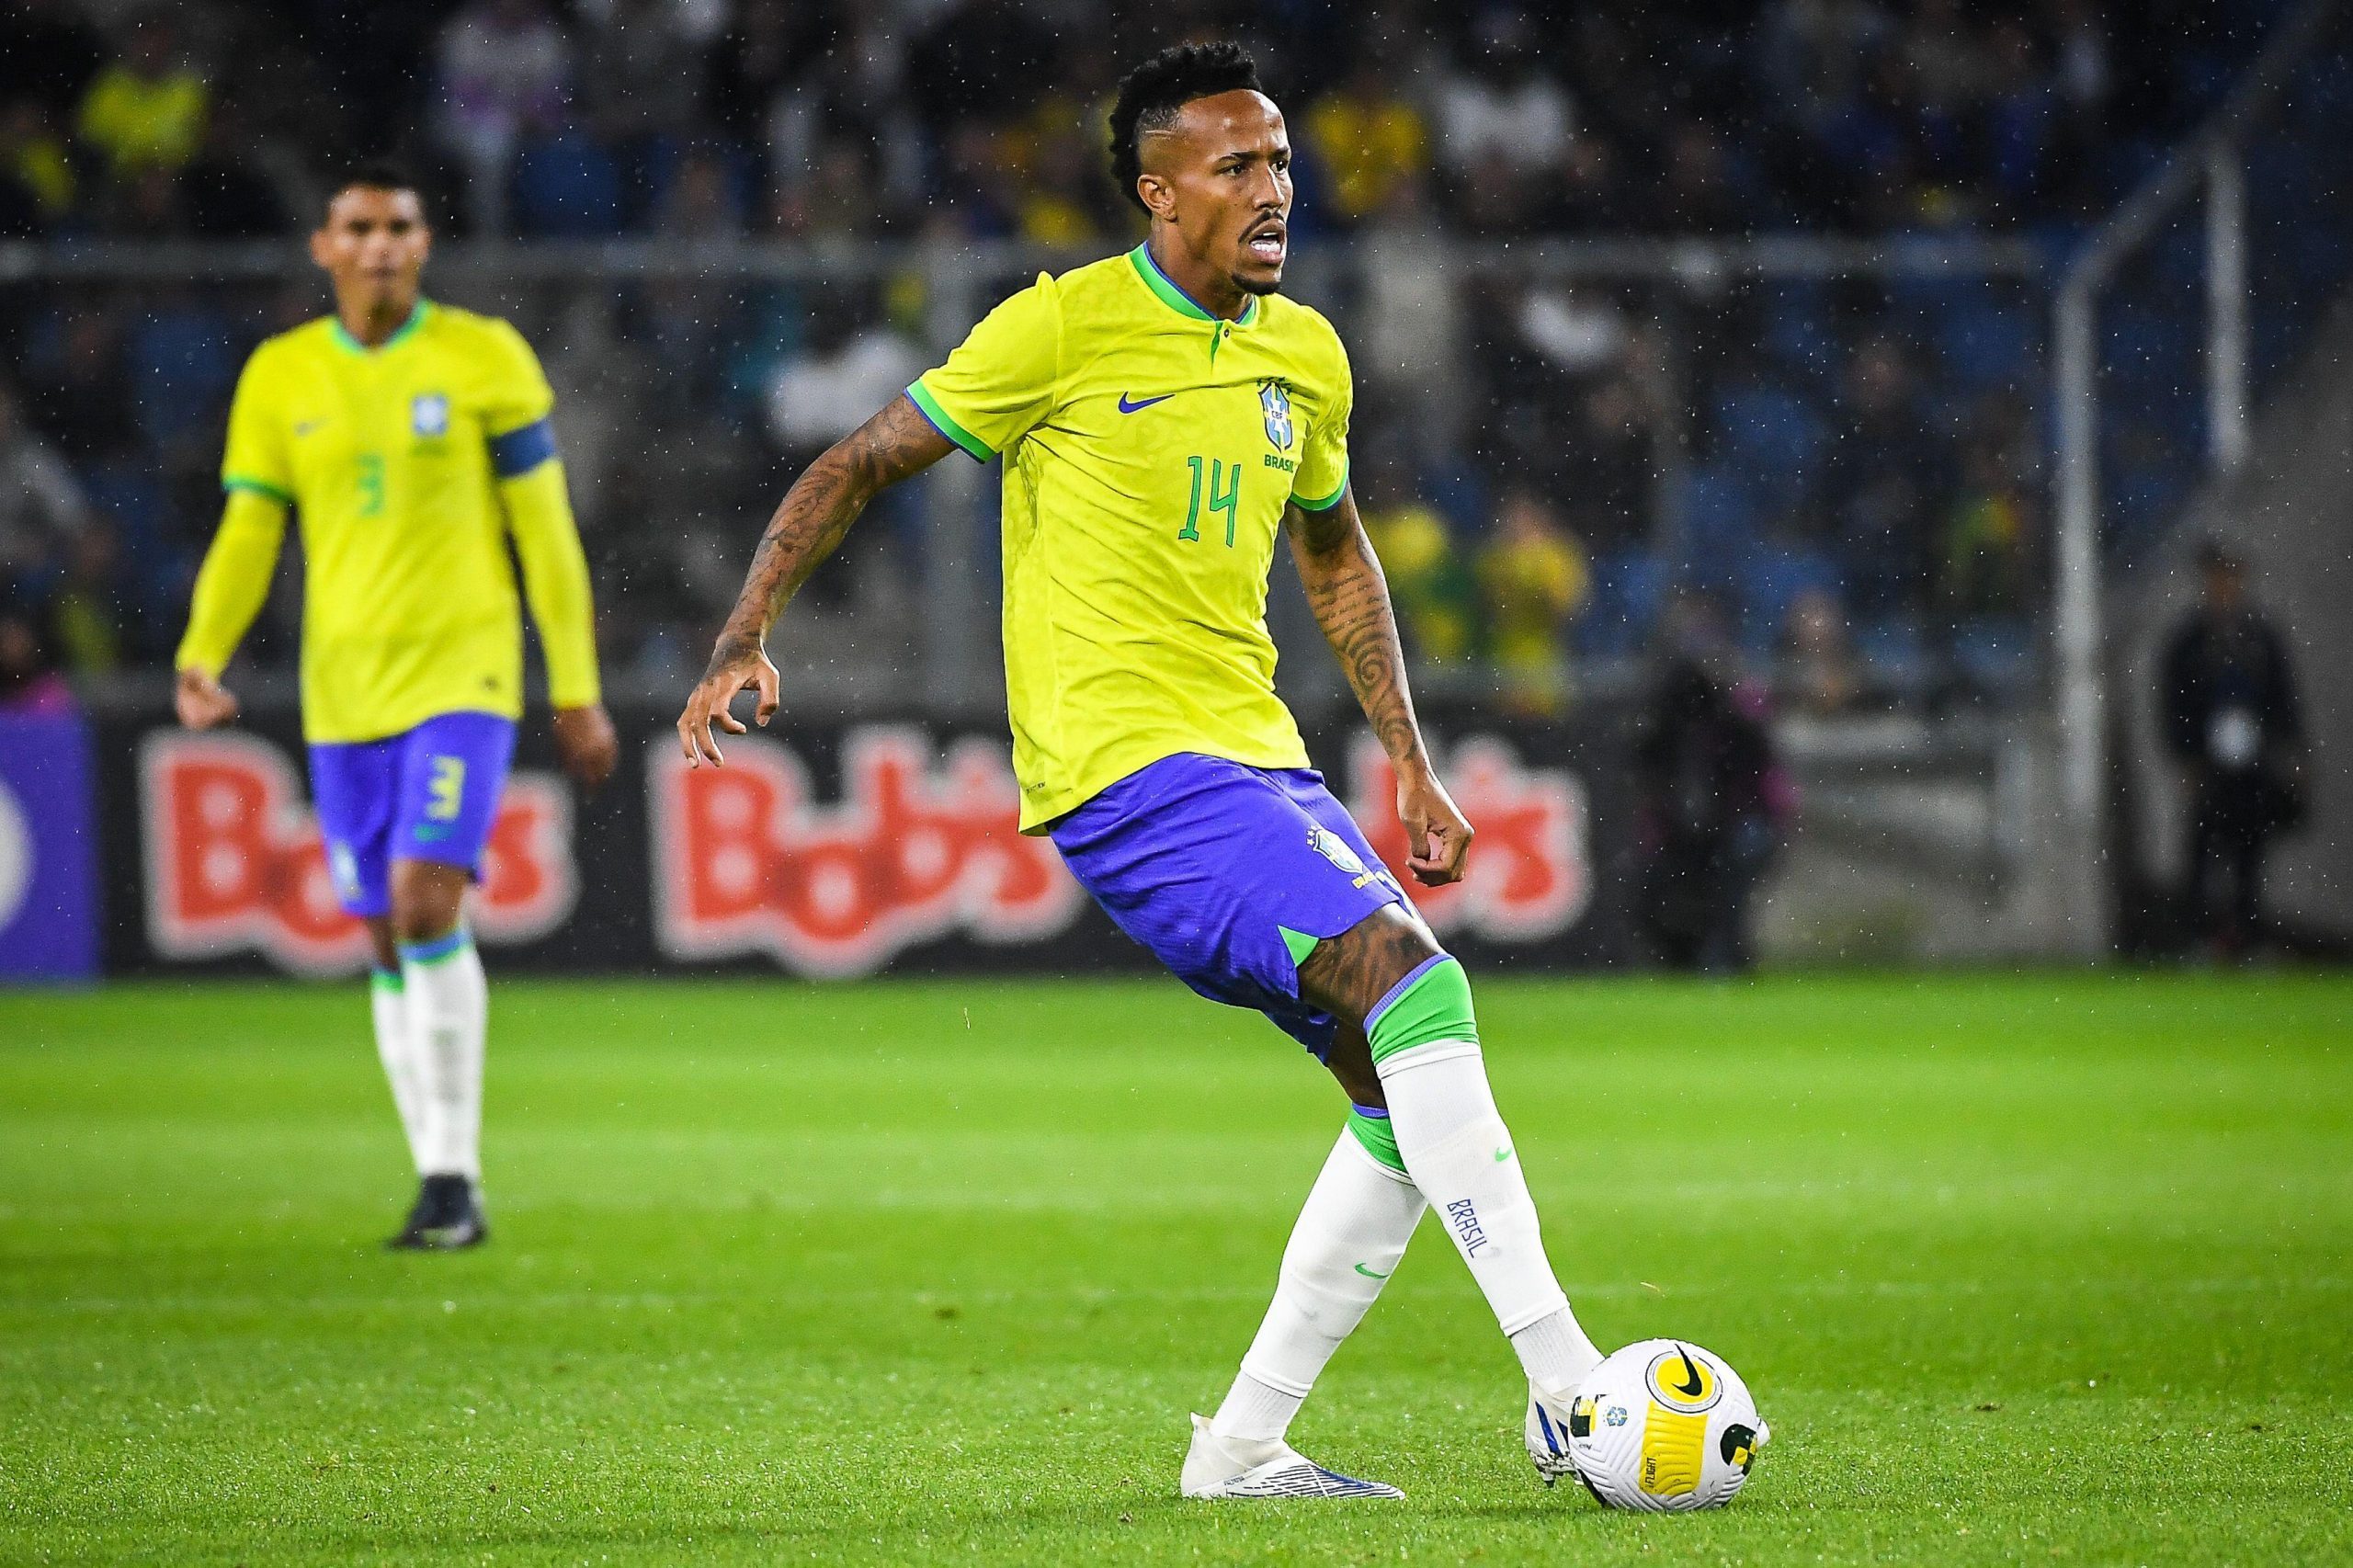 Brasilien – Sydkorea (VM): Stream, speltips & odds